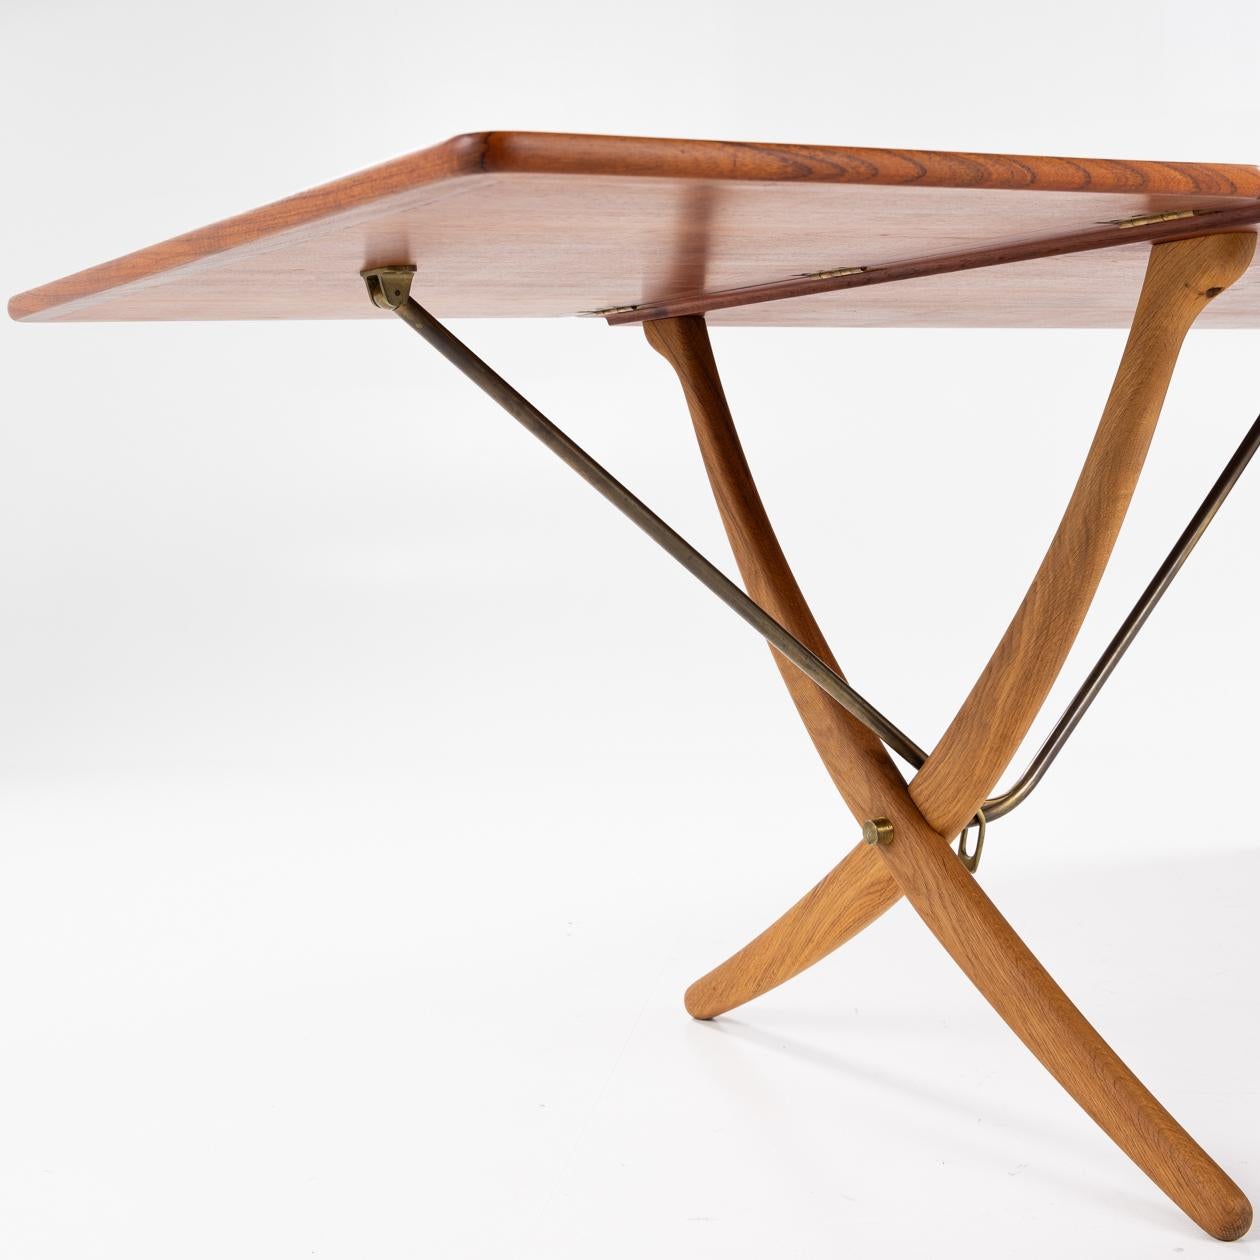 Patinated AT 304 - Sabre-legged table by Hans J. Wegner